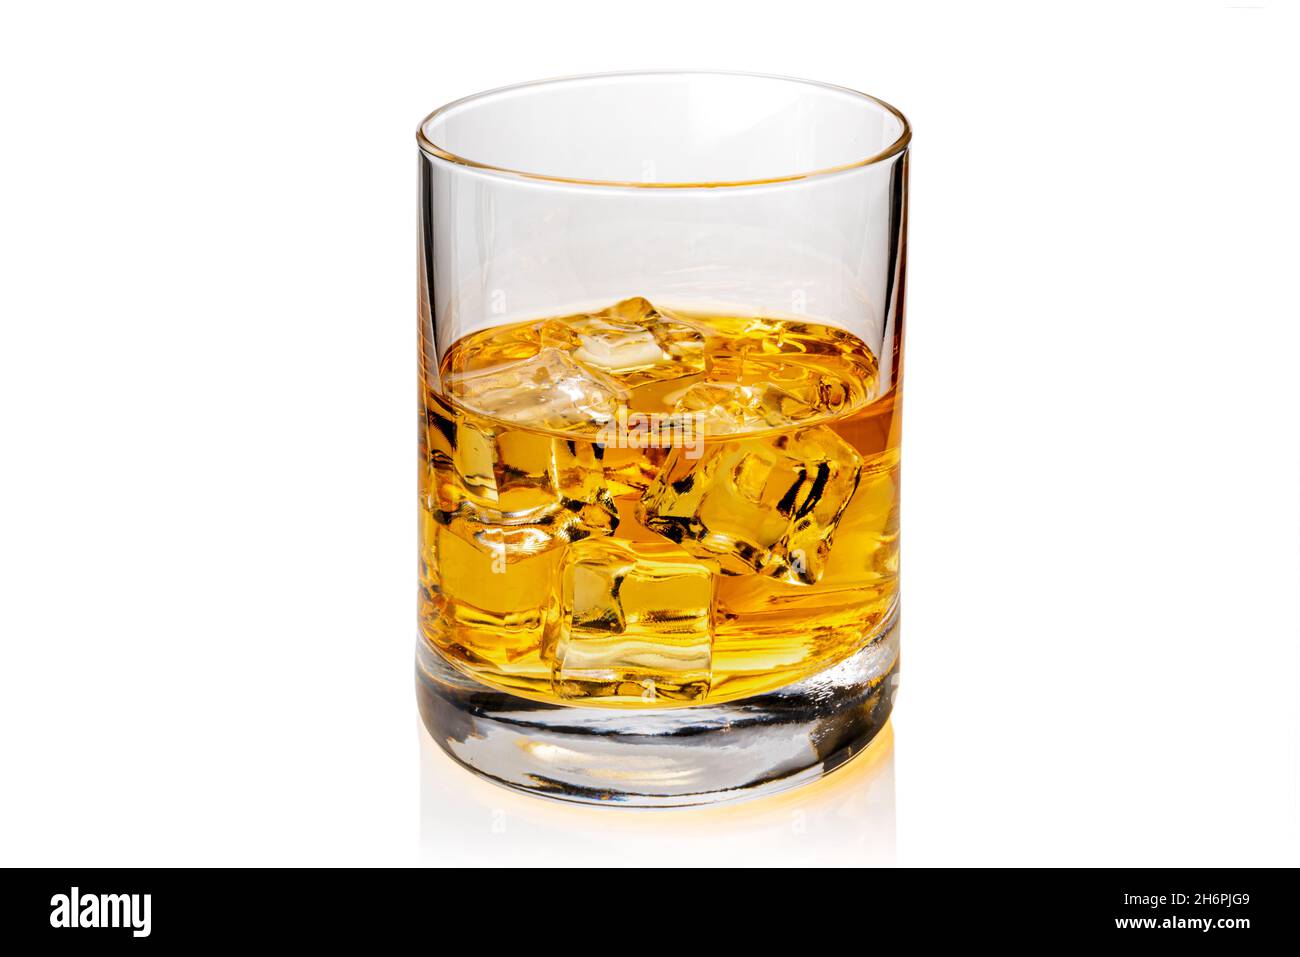 Verre de whisky ou de whisky ou de bourbon du Kentucky américain avec glaçons et son reflet sur le plan. Isolé sur blanc Banque D'Images